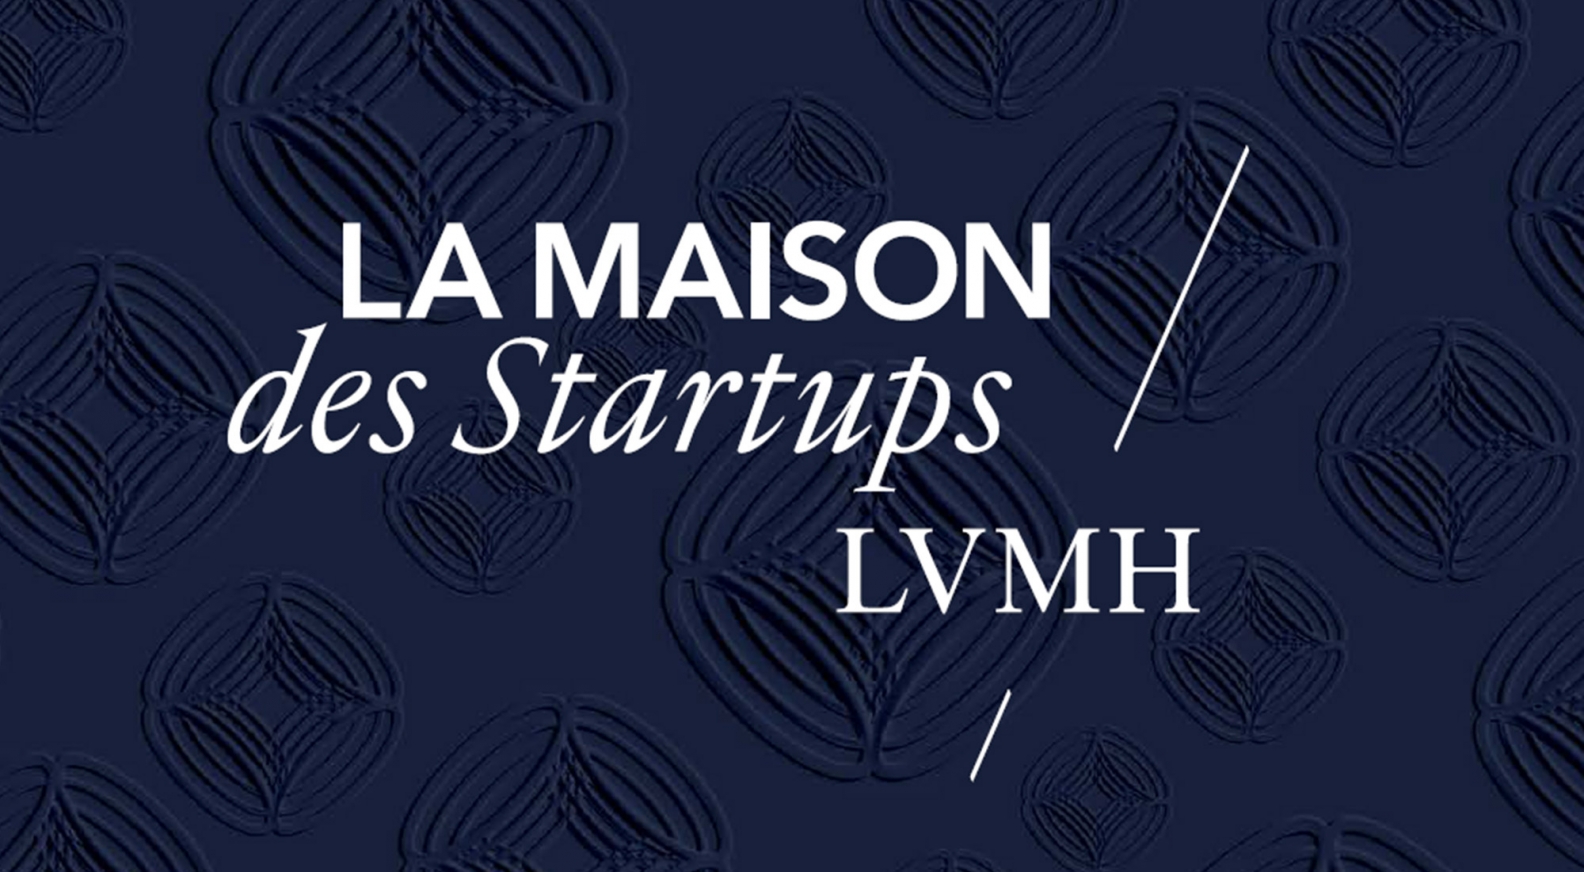 Velou - La Maison des Startups LVMH work space